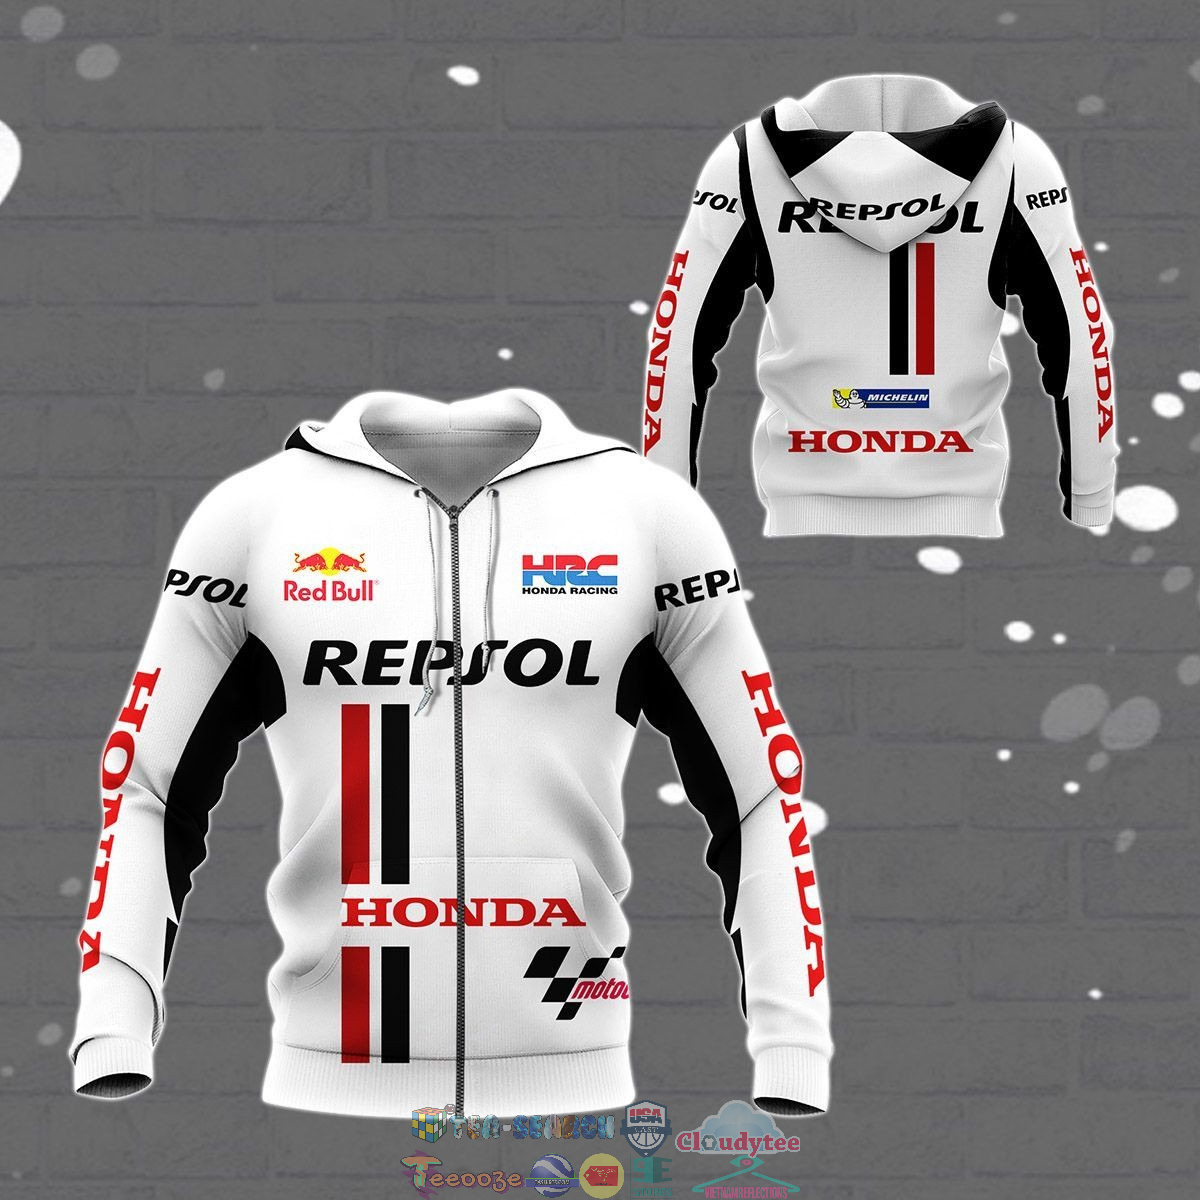 Repsol Honda ver 9 3D hoodie and t-shirt